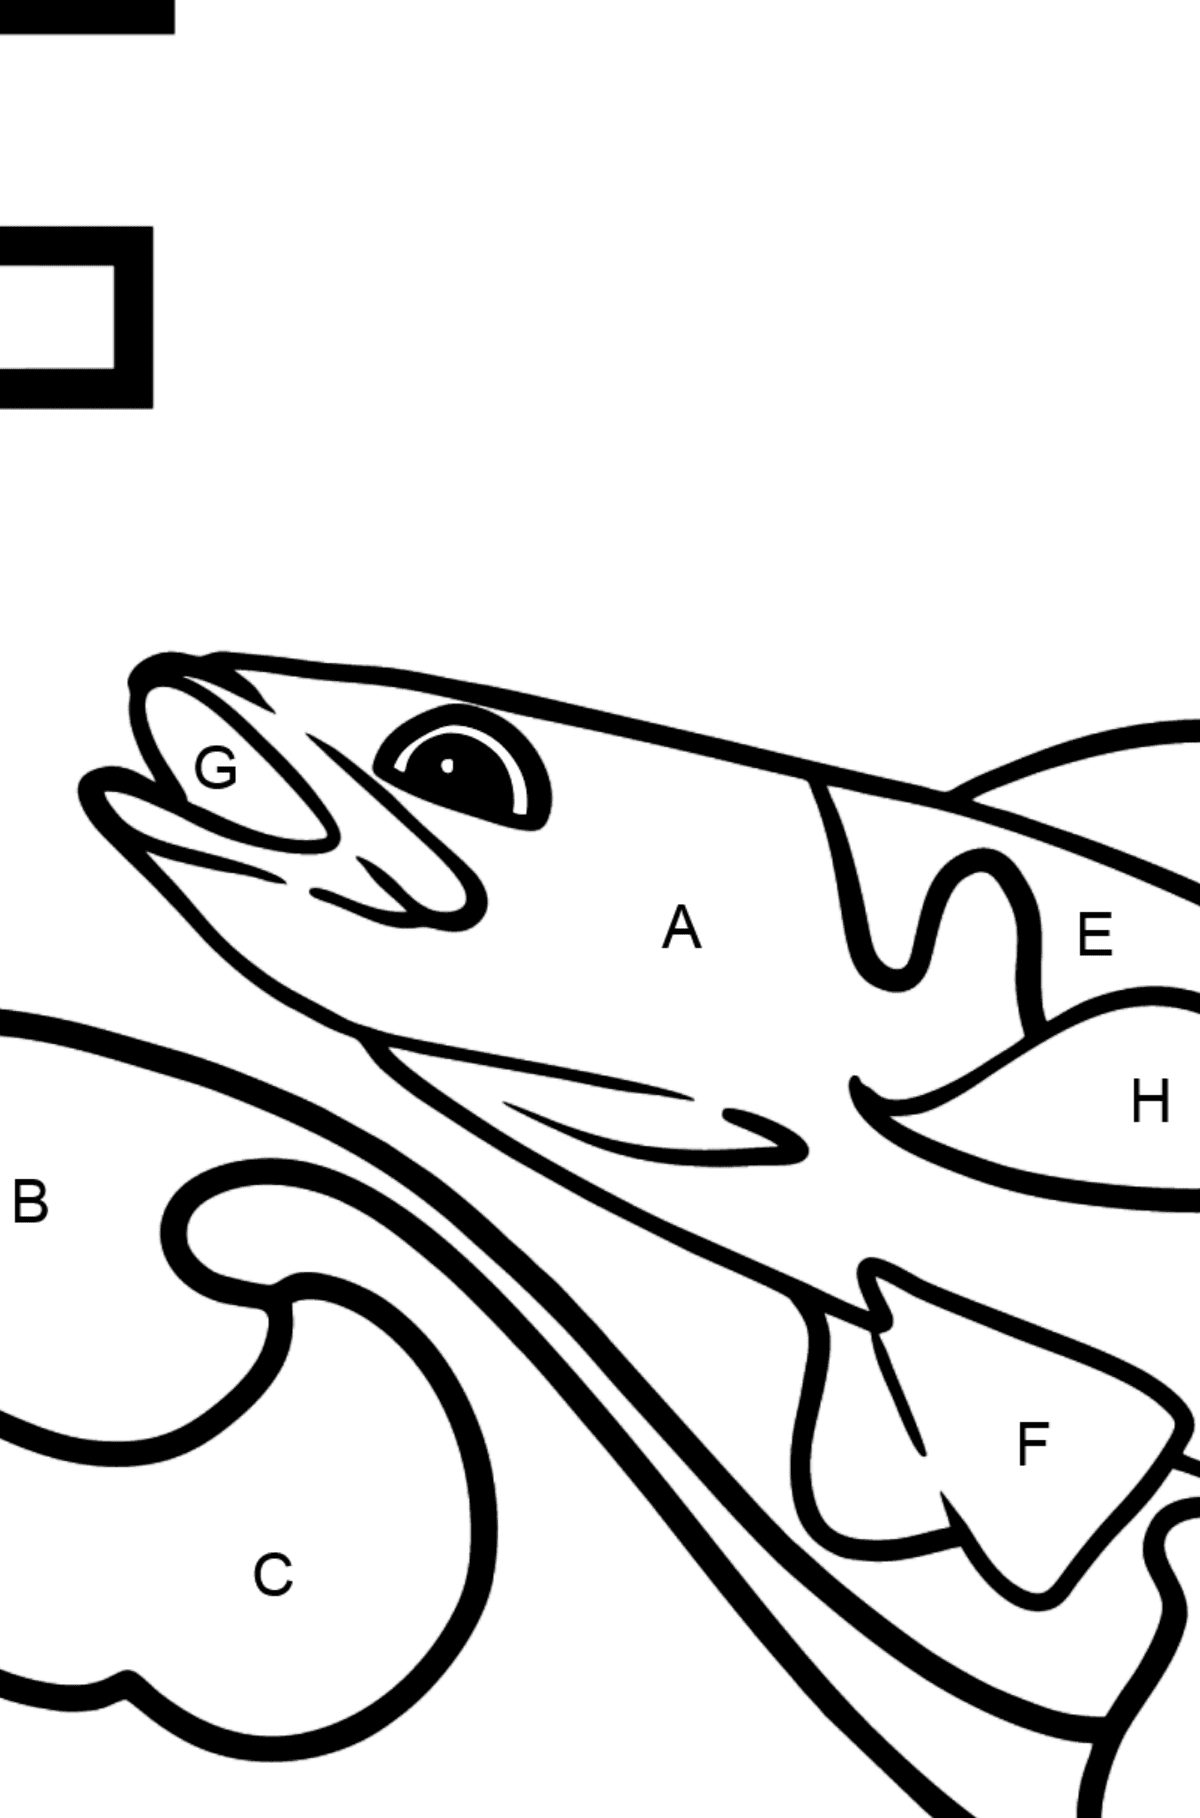 Dibujo de Letra F inglesa para colorear - FISH - Colorear por Letras para Niños